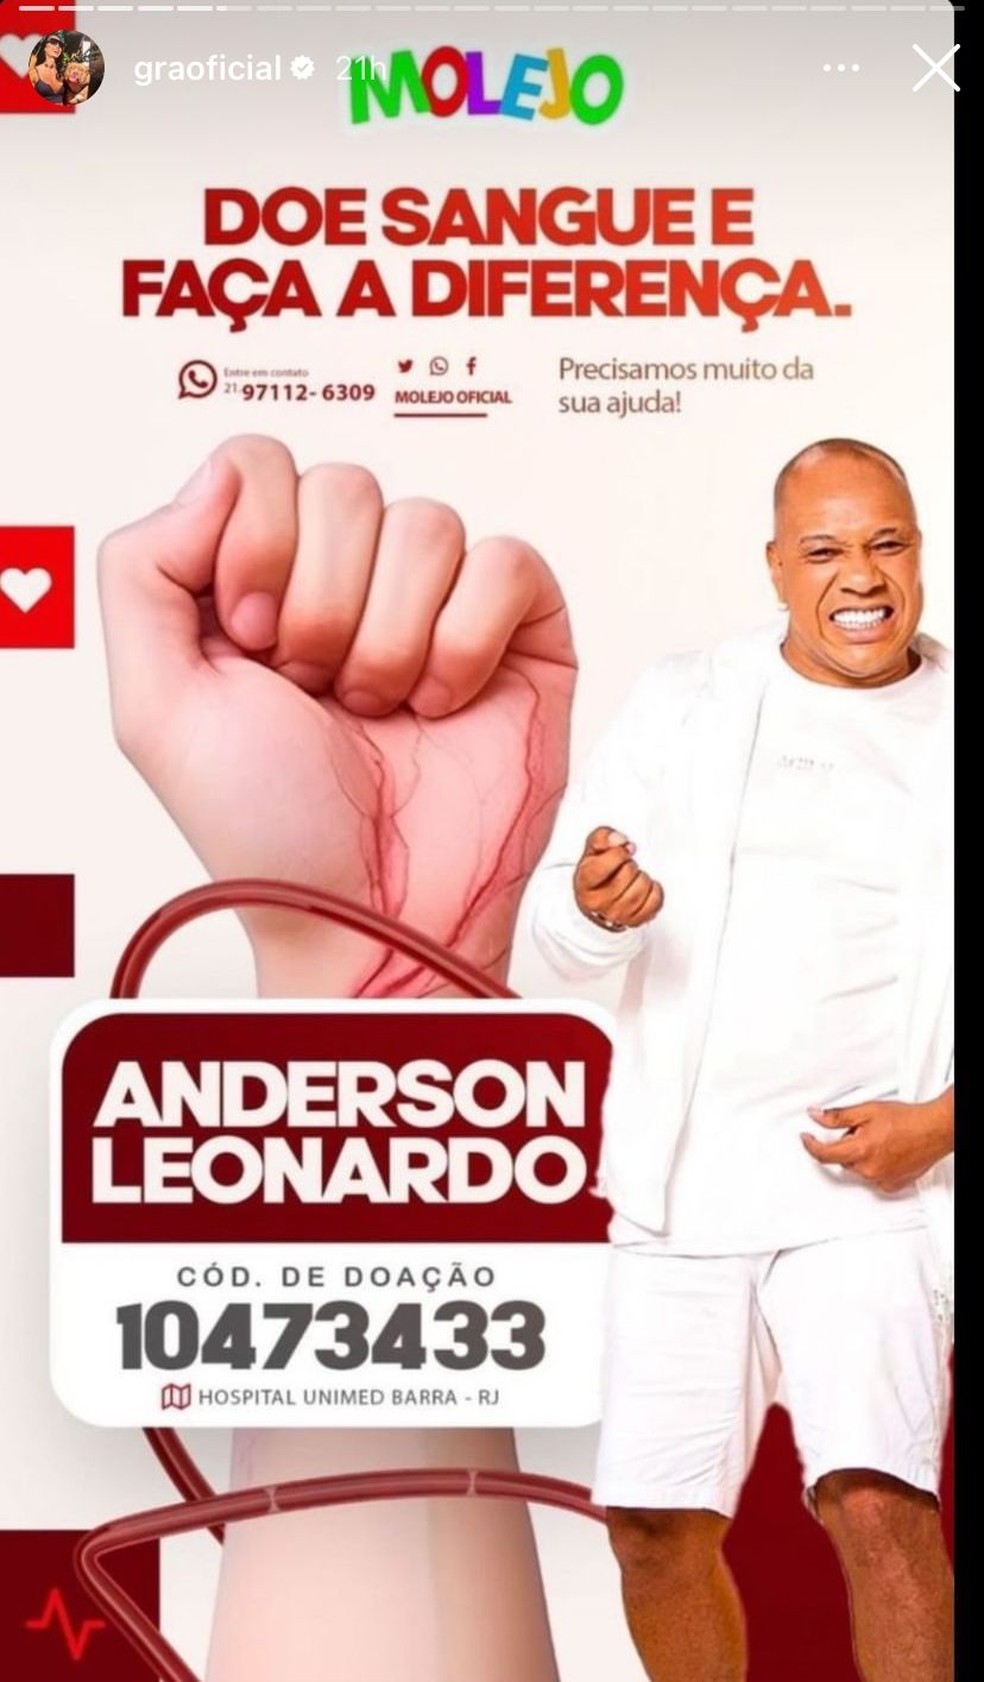 Gacyanne Barbosa pede doação para Anderson leonardo — Foto: Reprodução/ Instagram